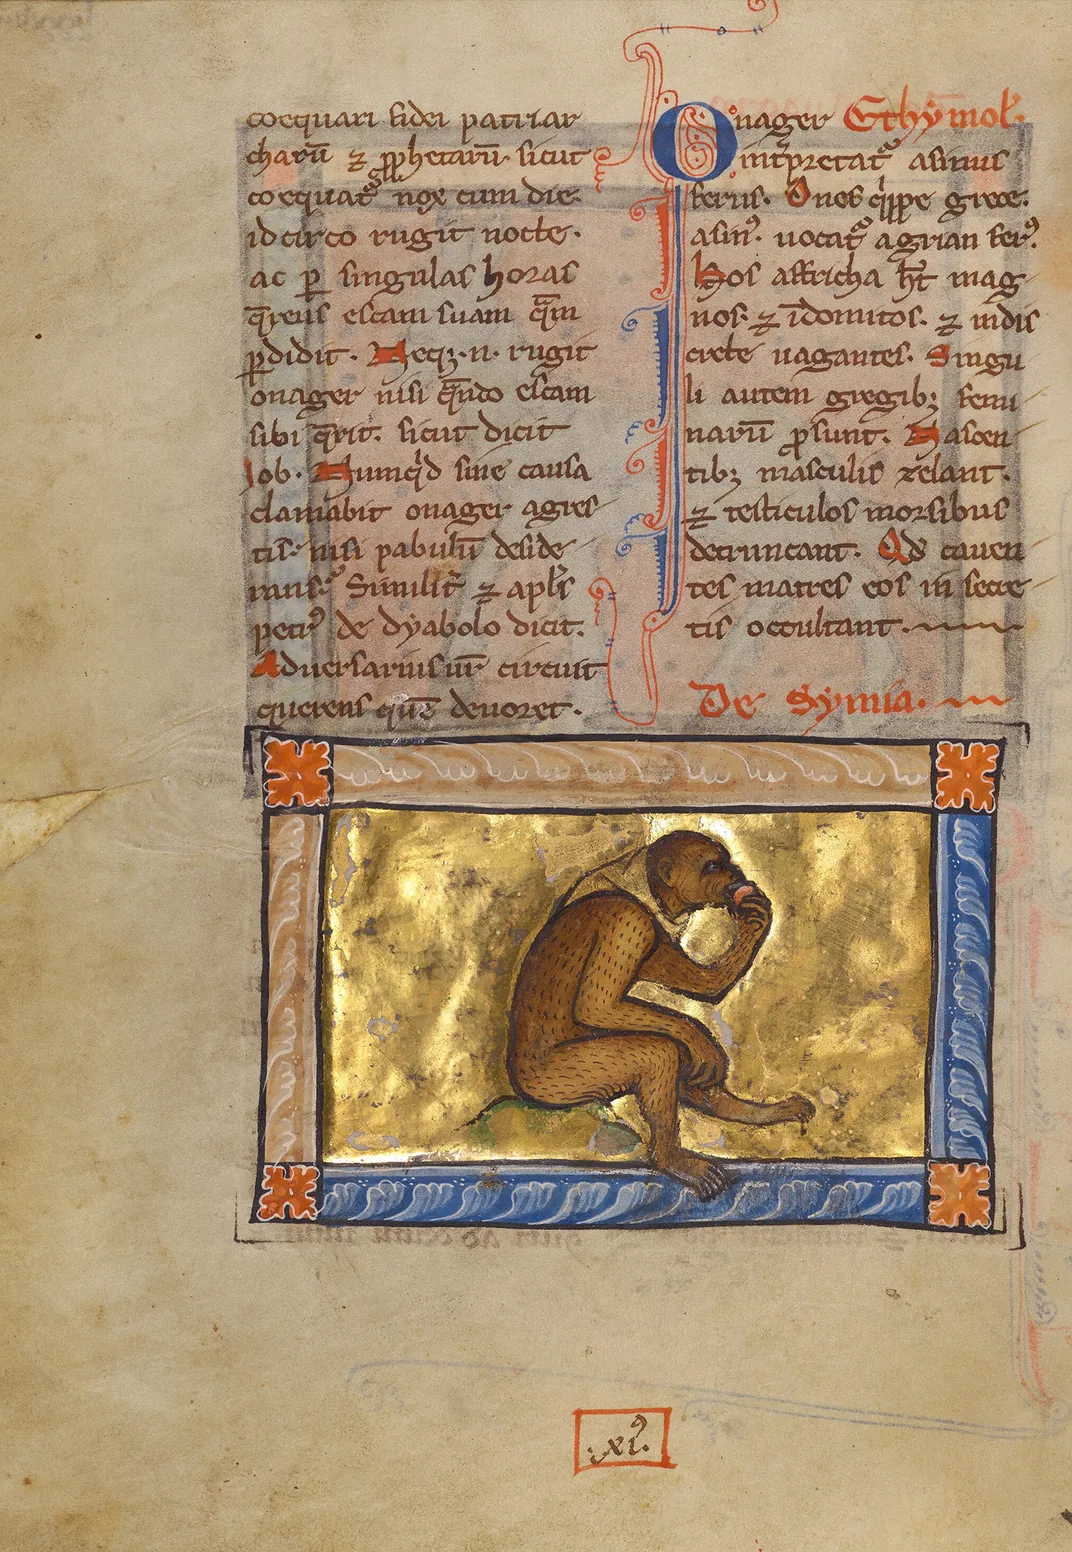 A circa 1270 illustration of a monkey